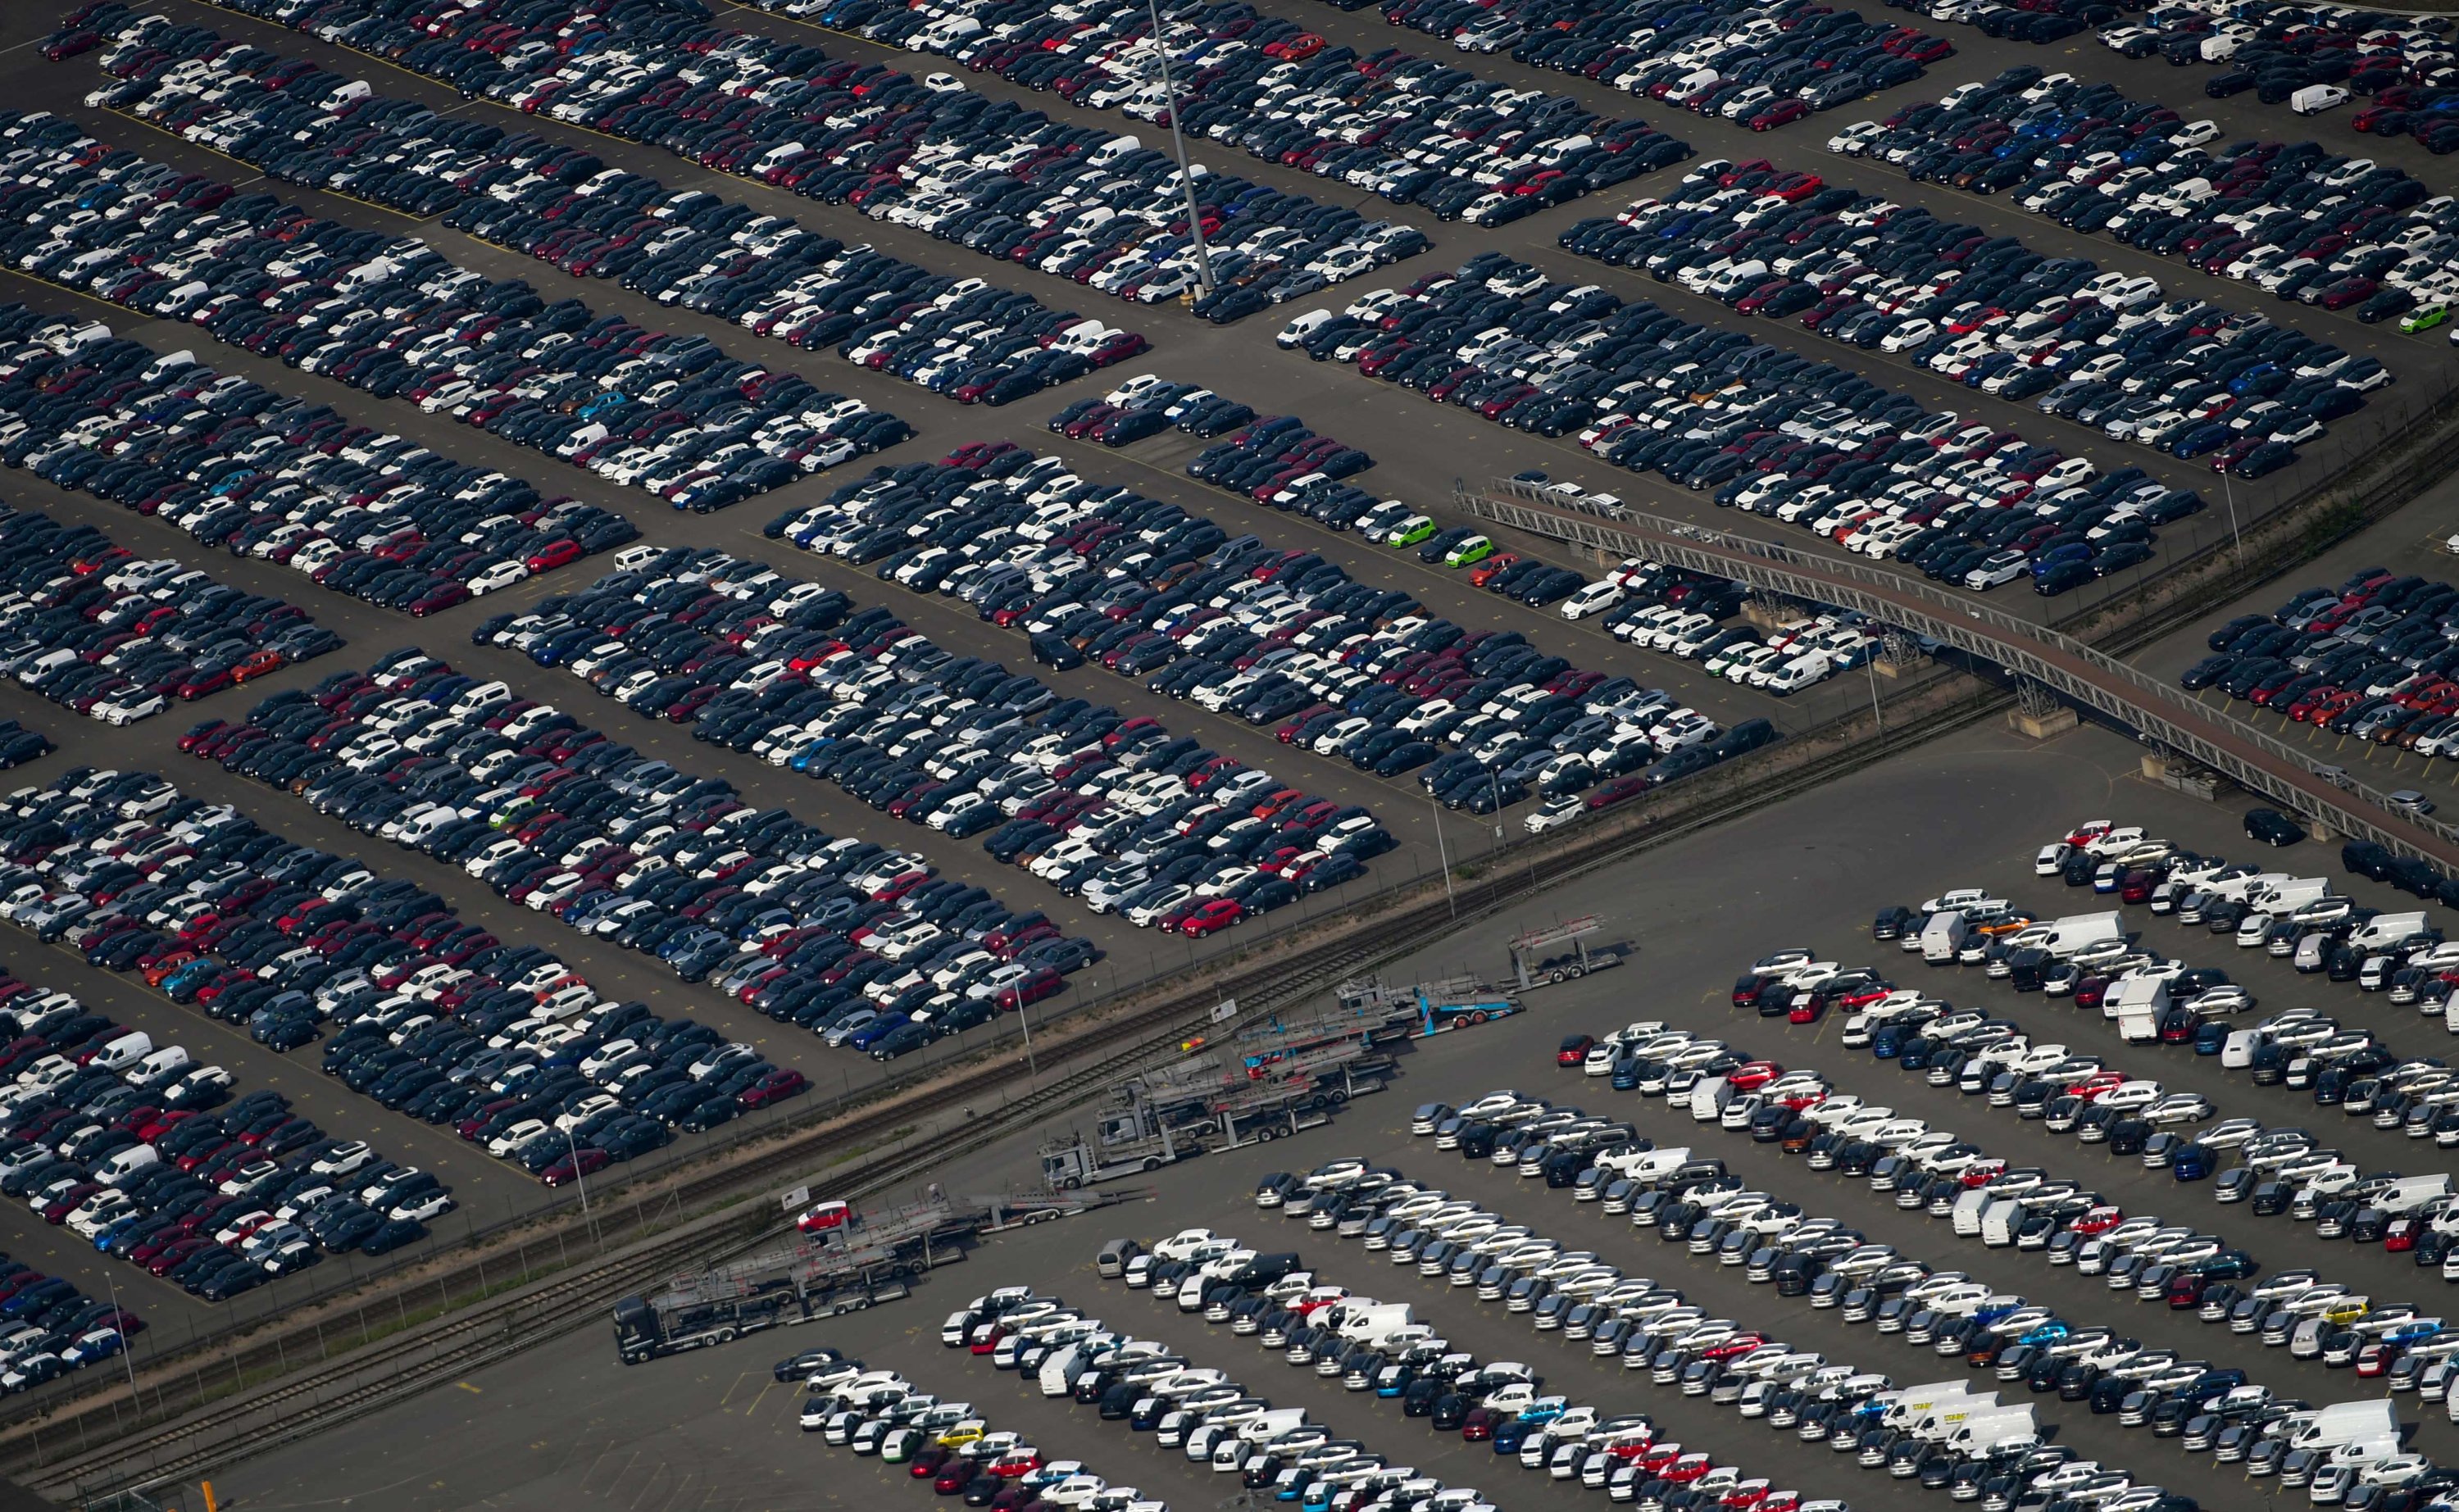 Avrupa'da binek otomobil satışları Ocak ayında yüzde 24 düştü